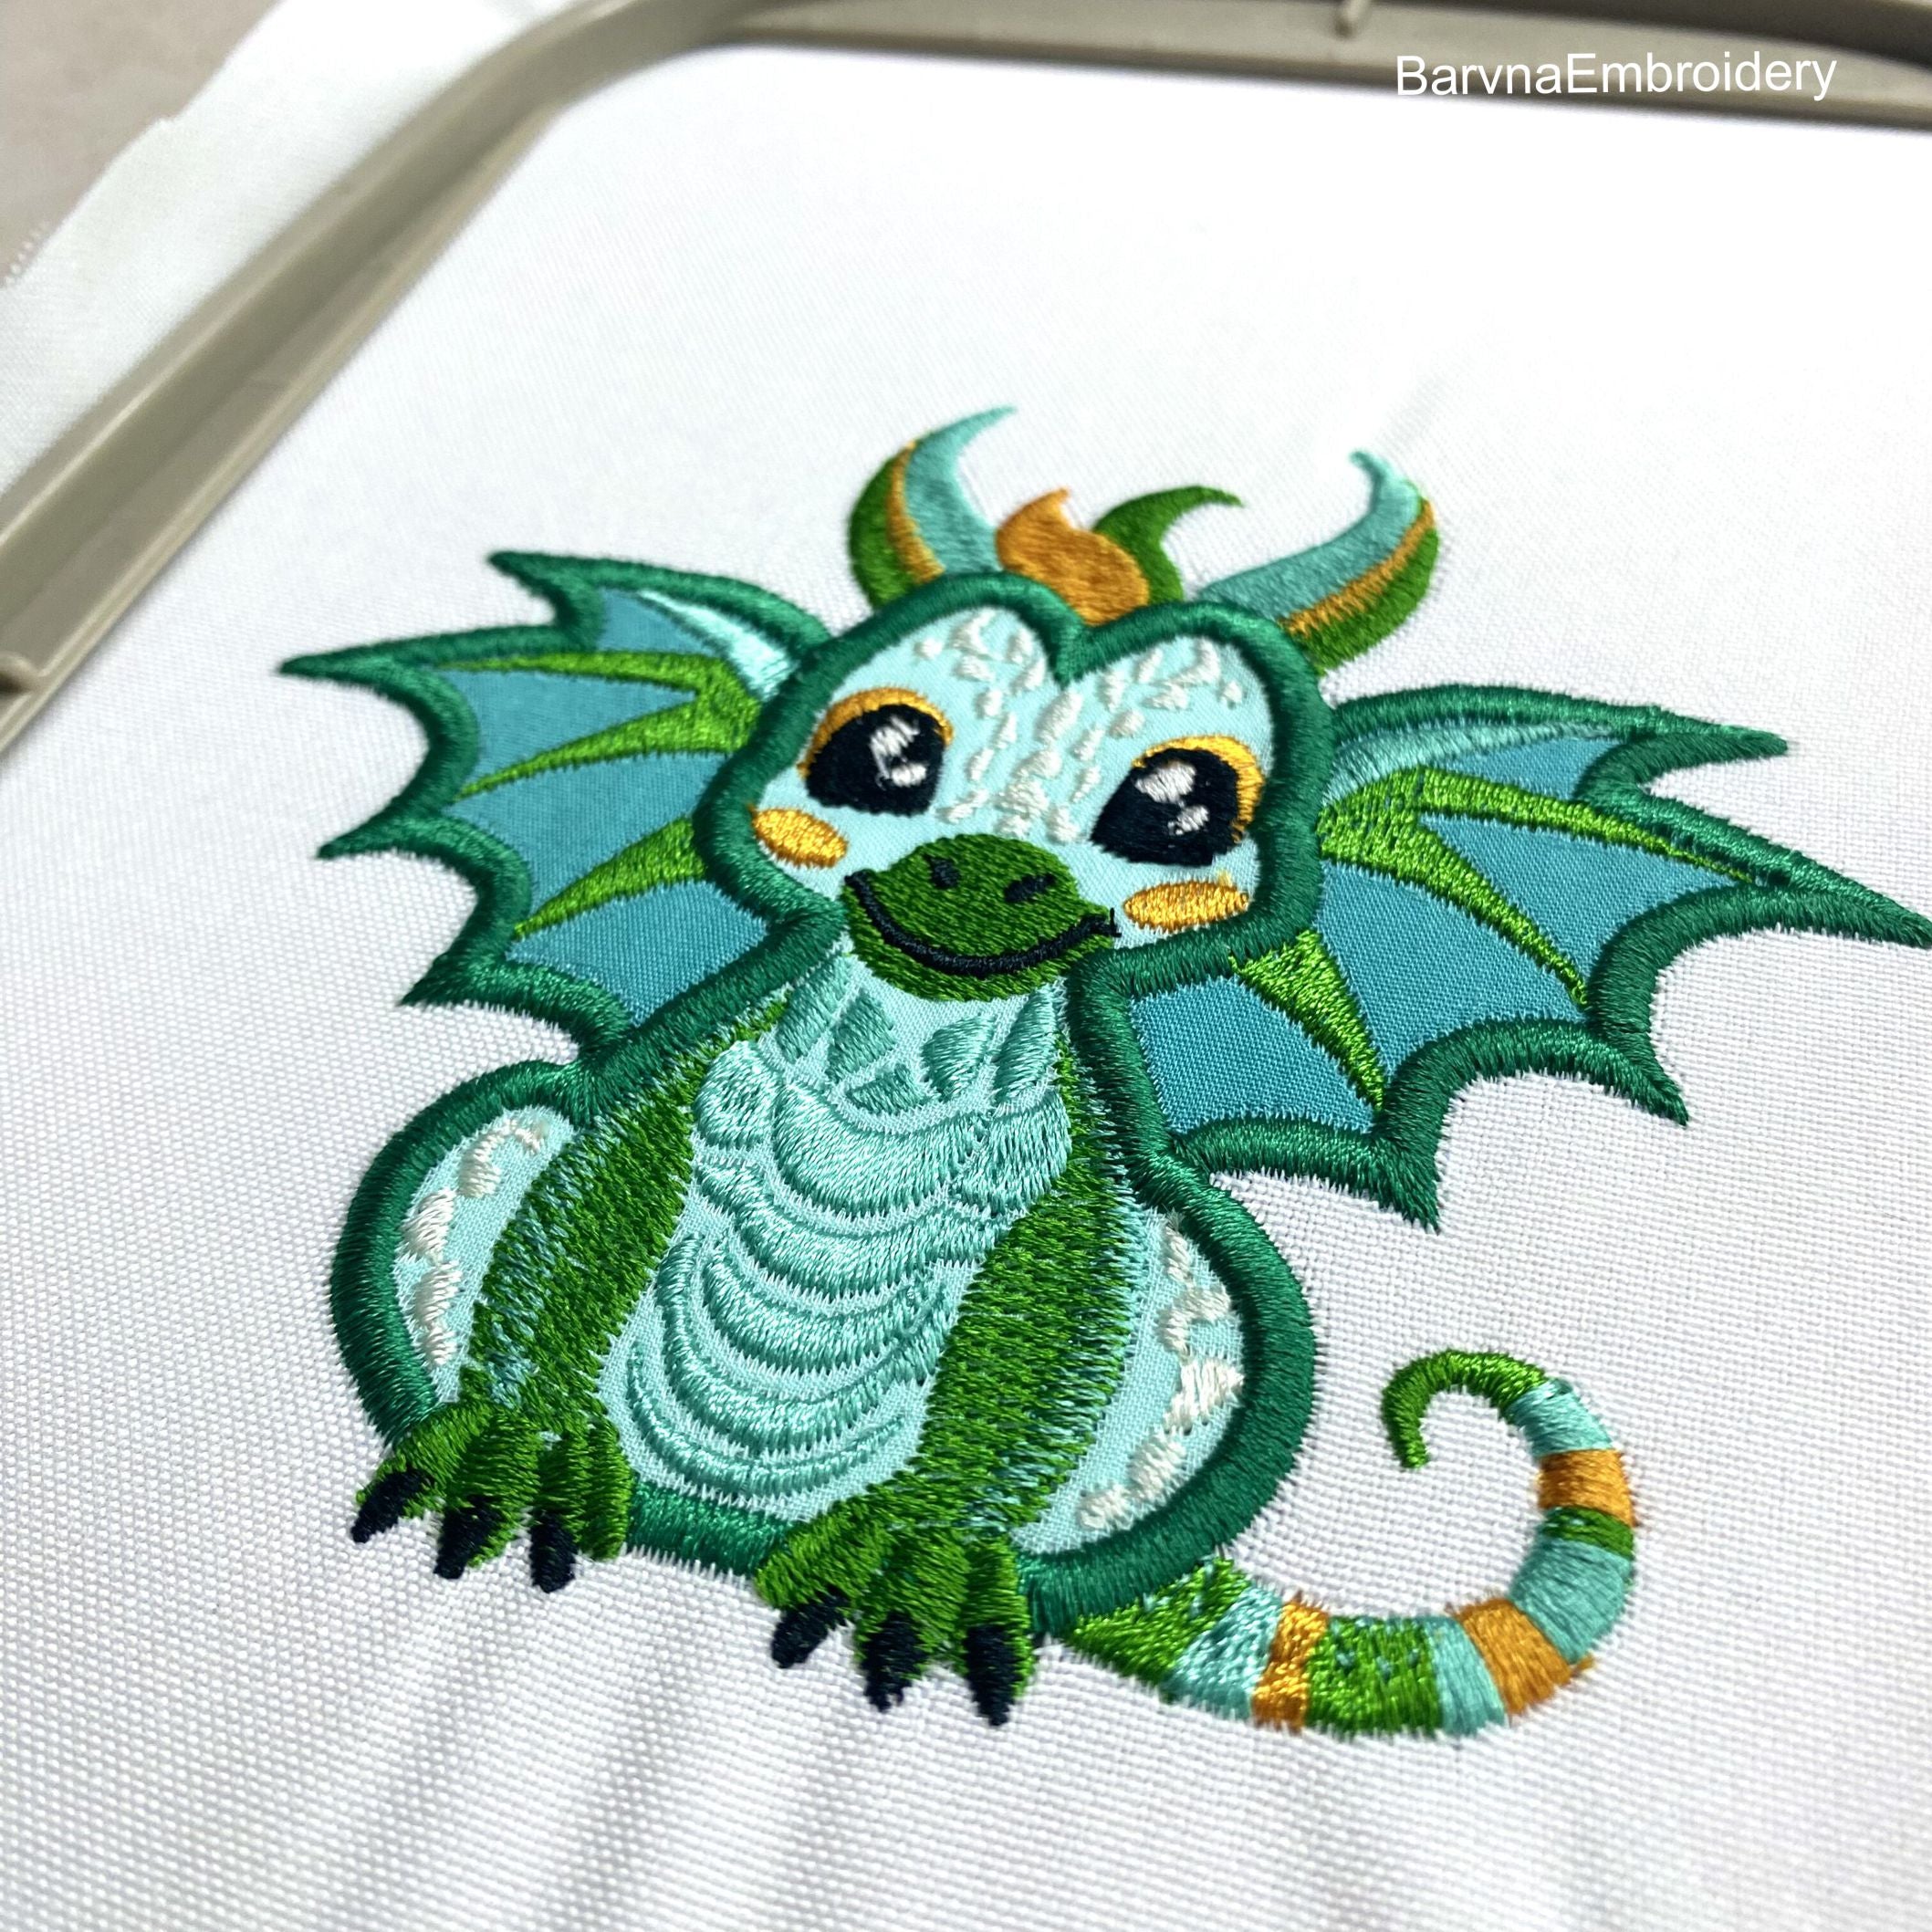 Dragon Applique Embroidery Design for Machine, Dragon embroidery designs, Dragon embroidery files, Machine embroidery designs, Applique embroidery designs, Green dragon embroidery designs